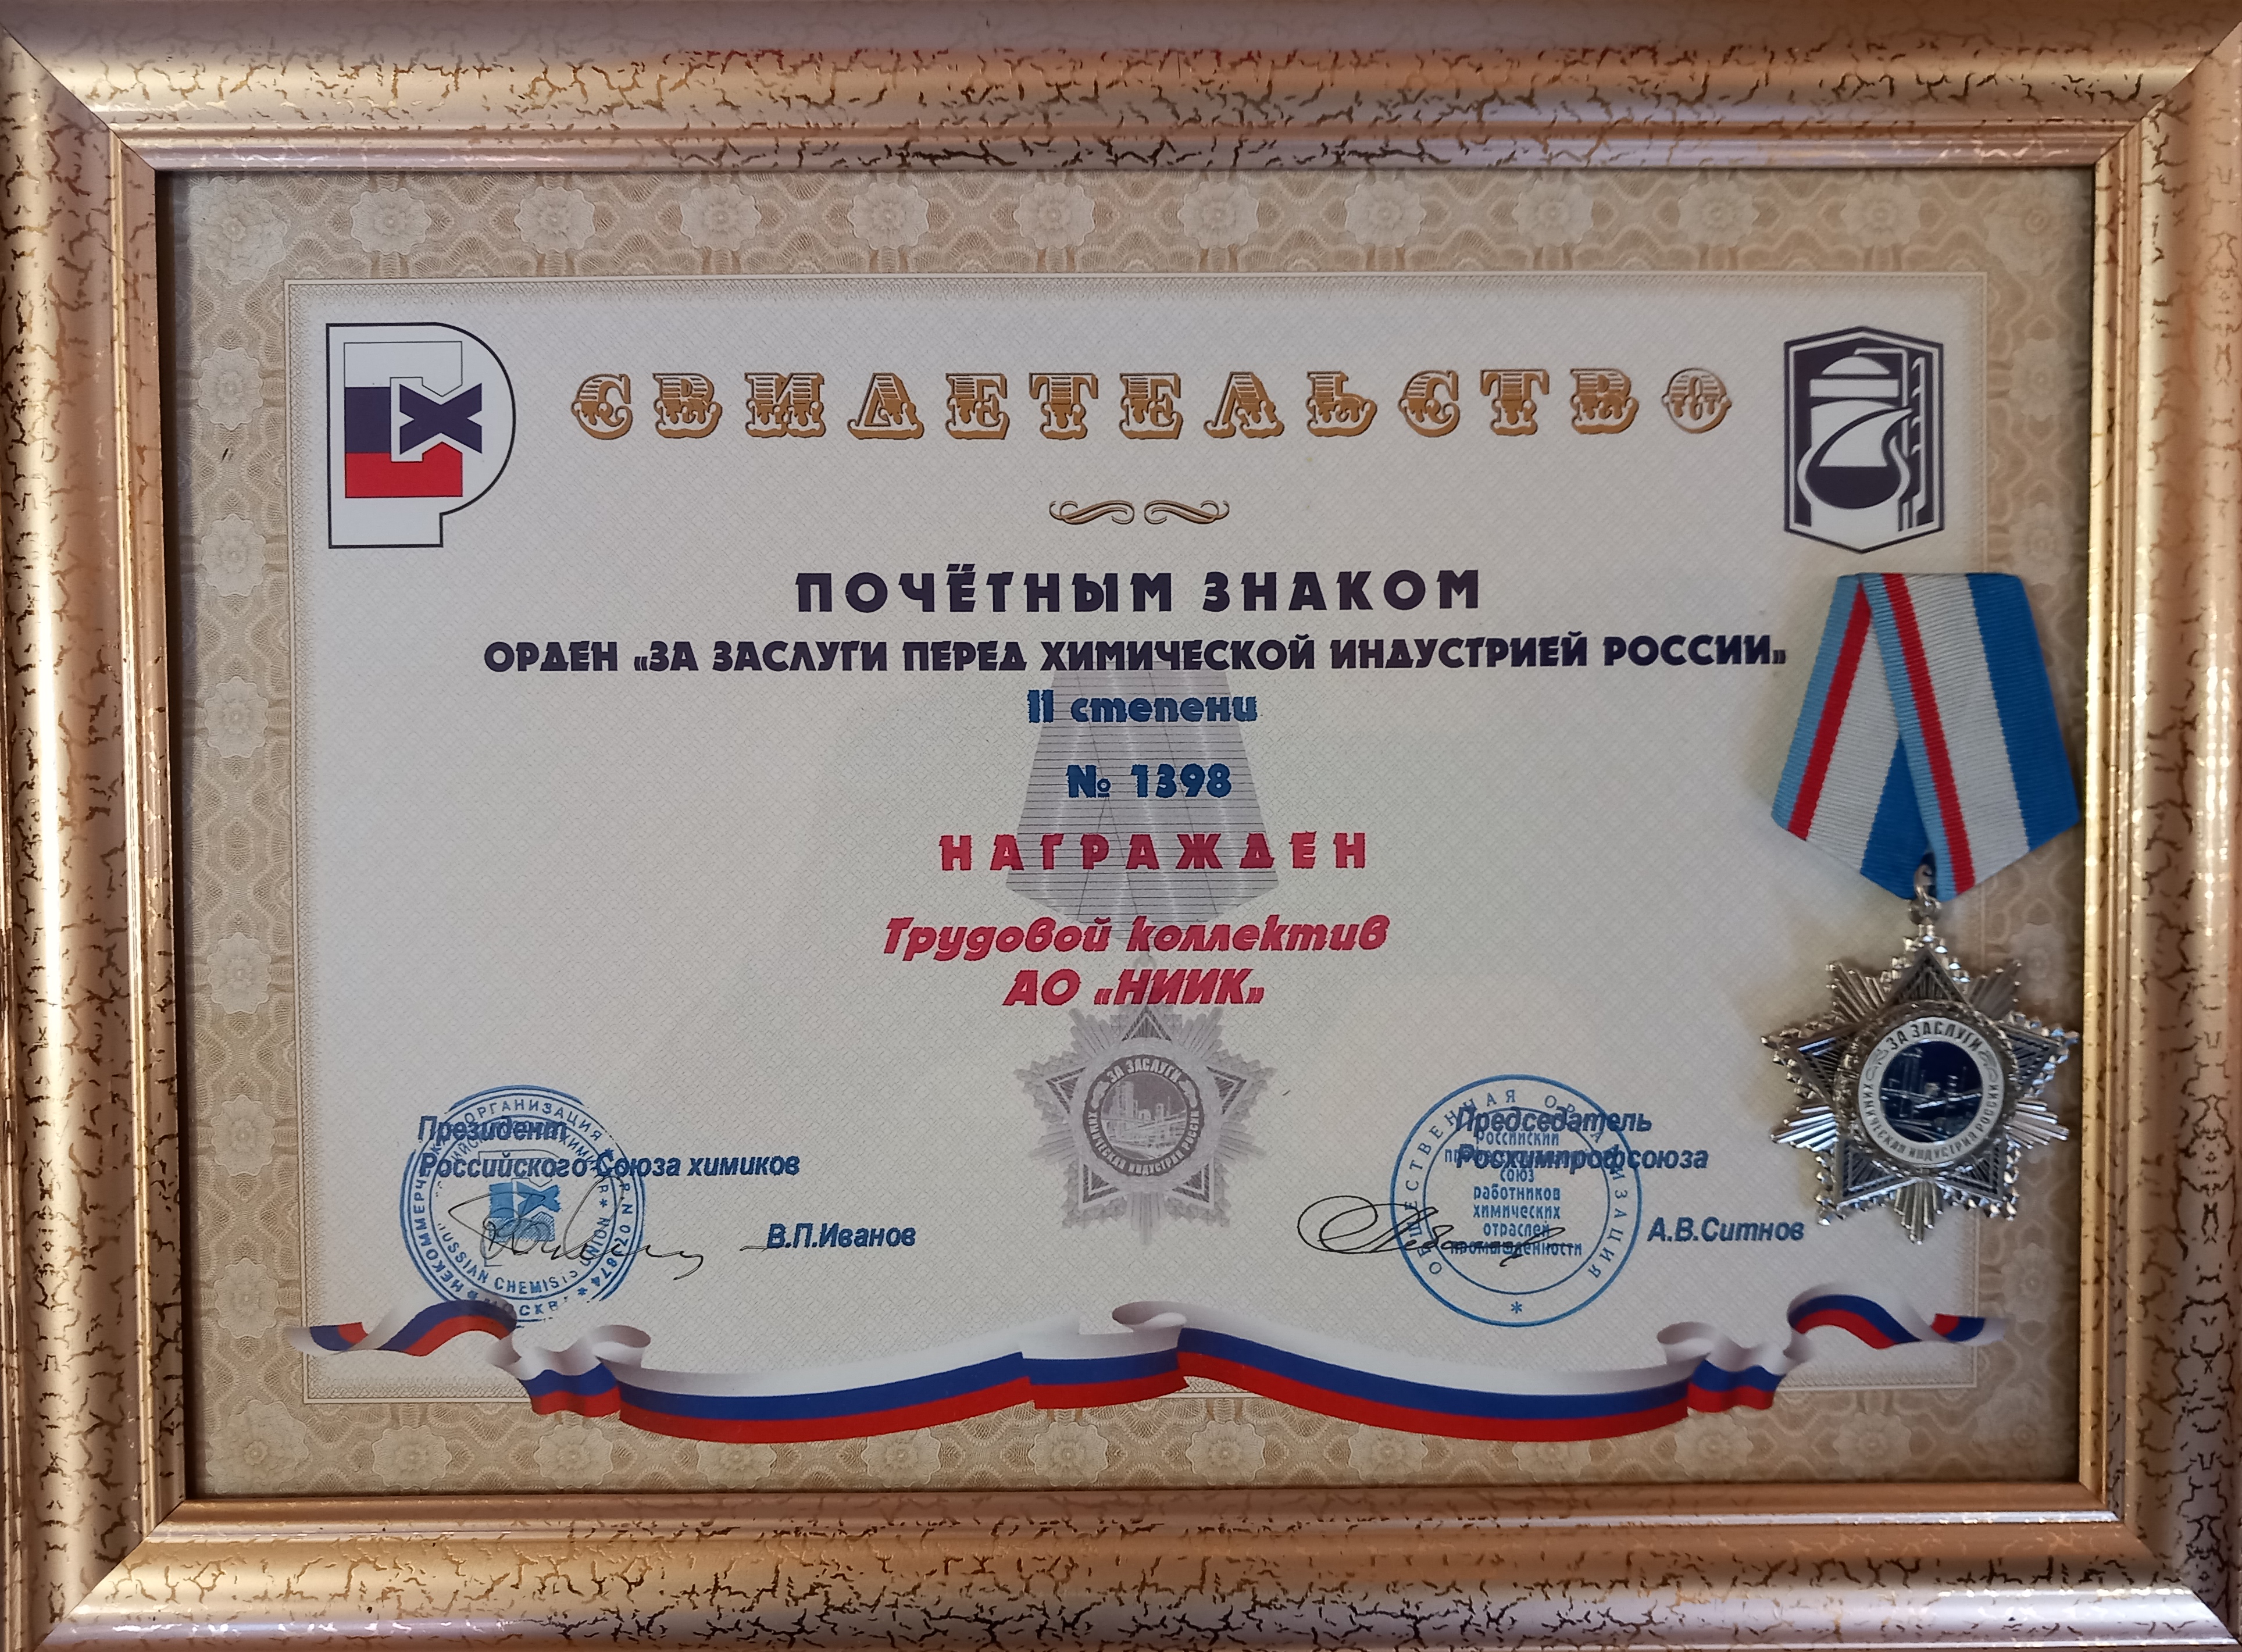 НИИК награжден орденом "За заслуги перед химической индустрией России» II степени"